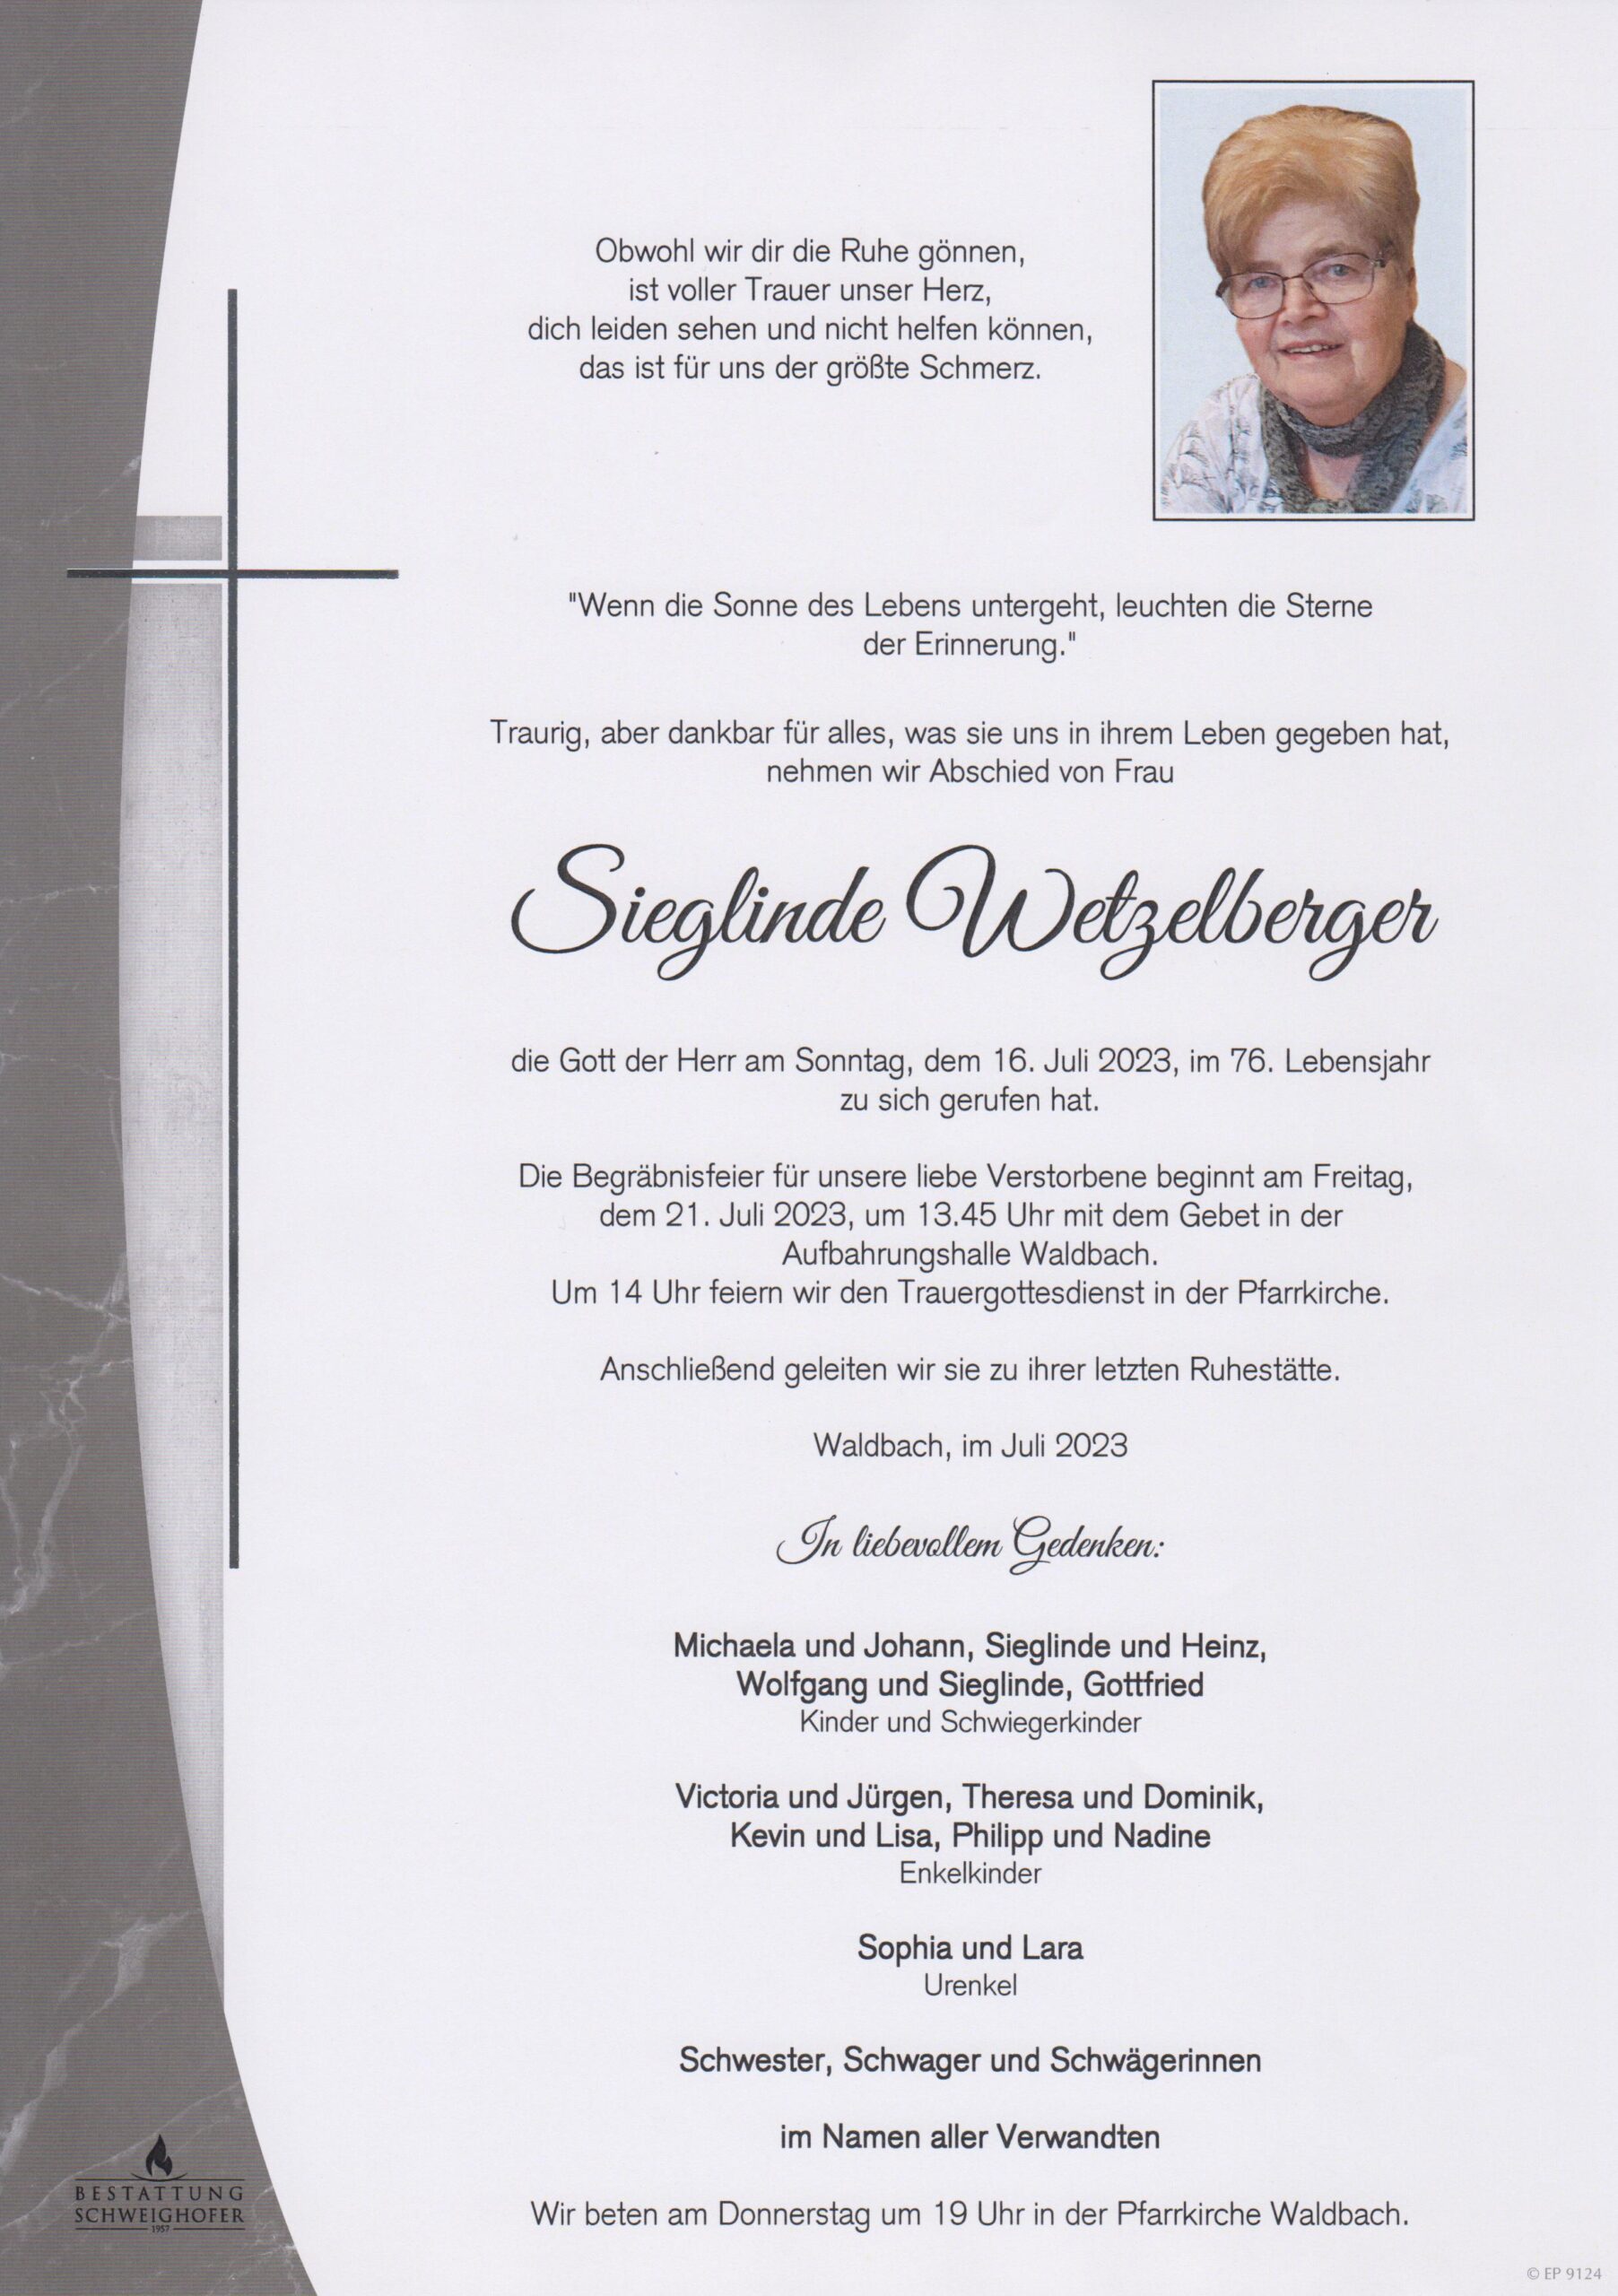 Sieglinde Wetzelberger